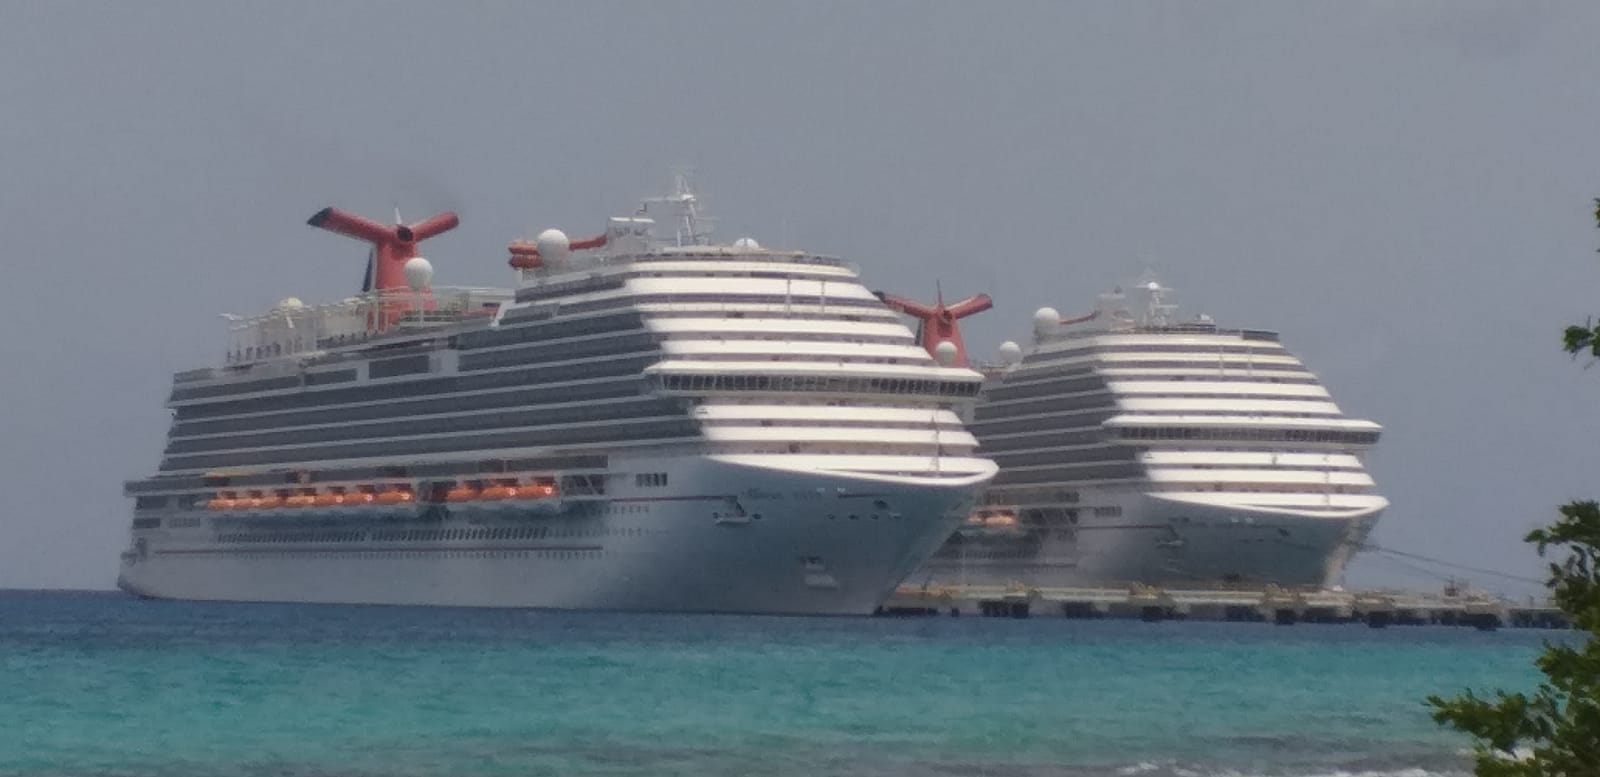 Cozumel: Más de cuatro mil turistas llegan en los cruceros de la naviera Carnival